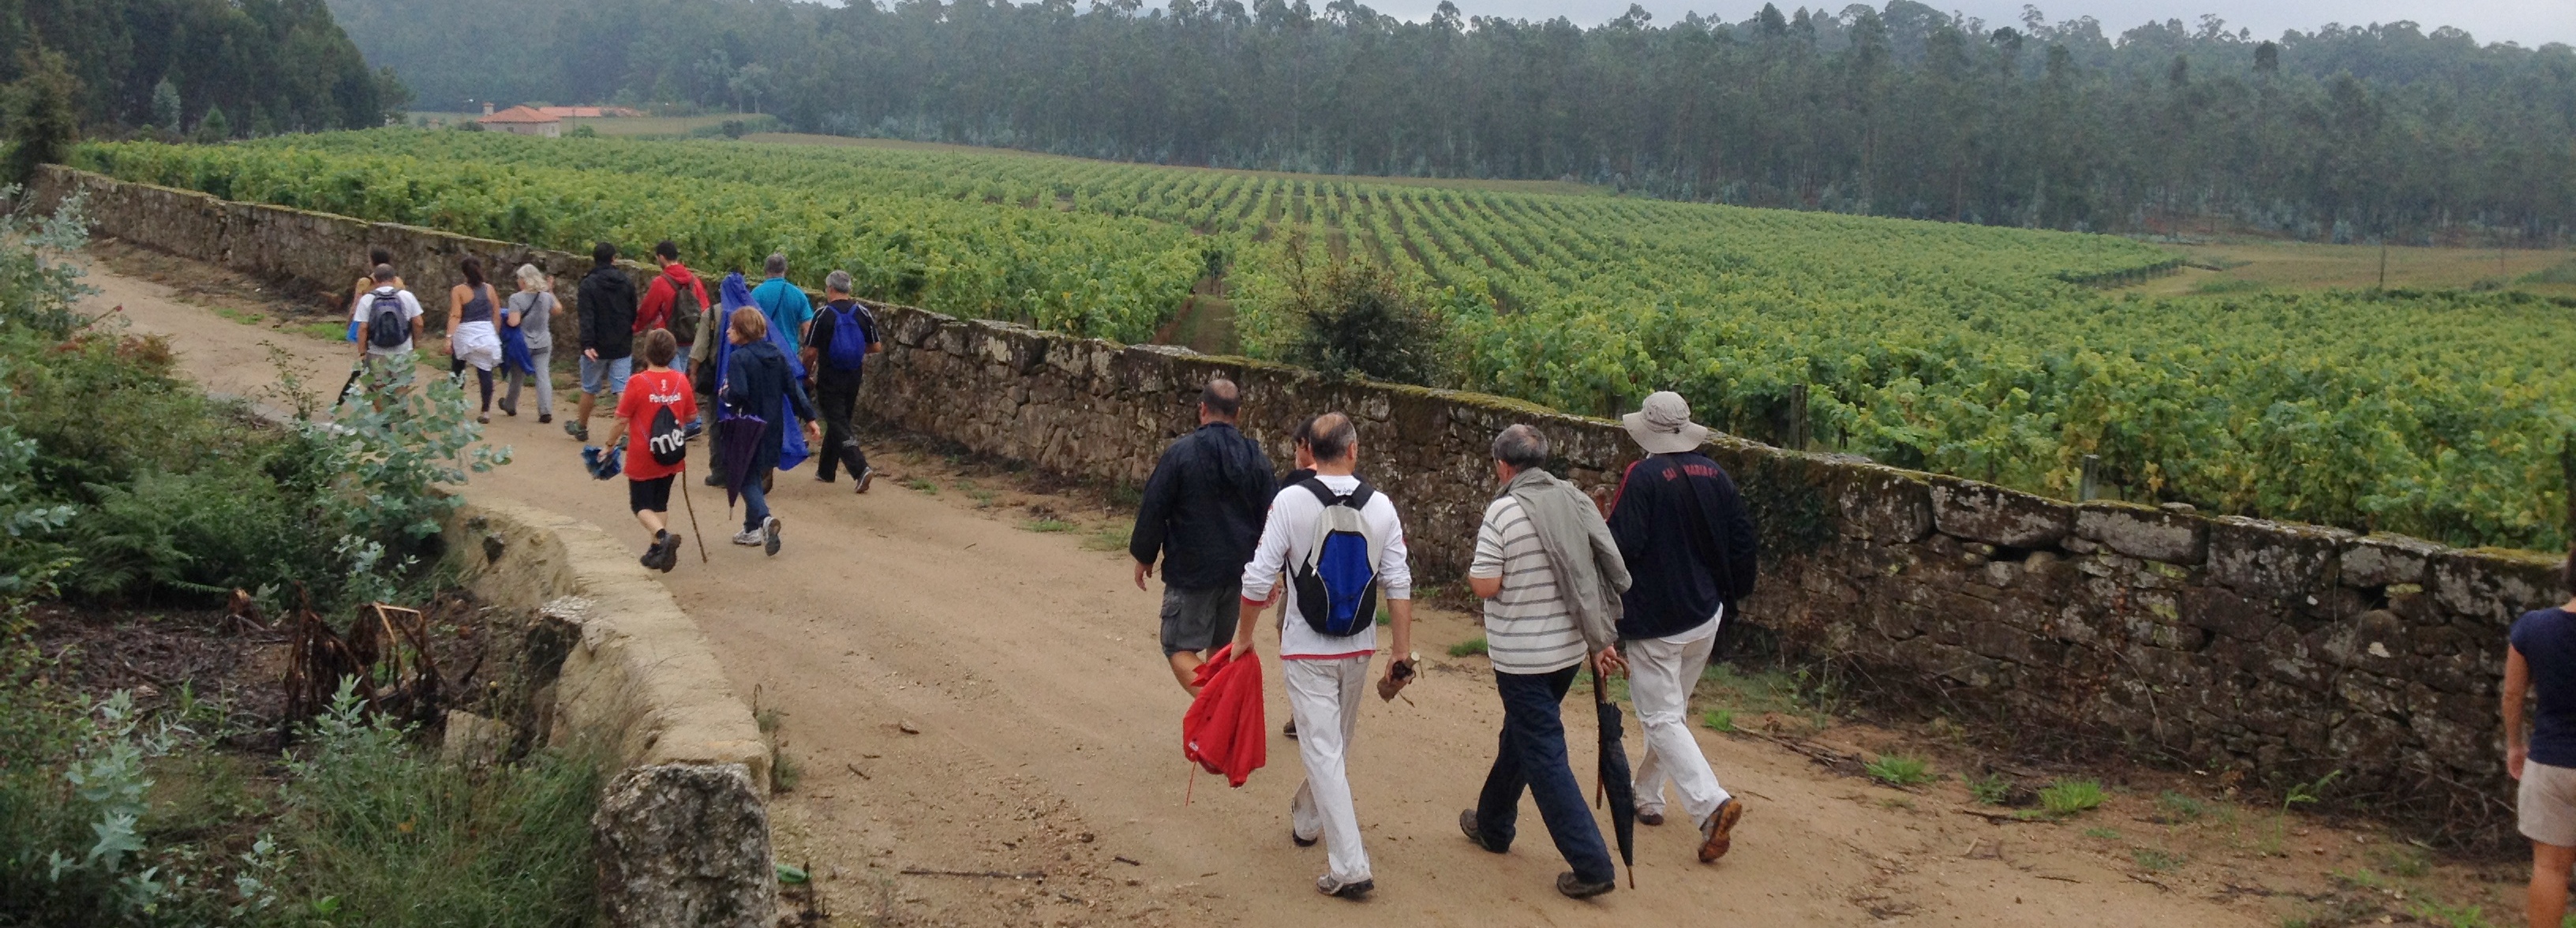 Programa “Caminhar para conhecer Barcelos” realizou etapa dedicada ao vinho e ao património